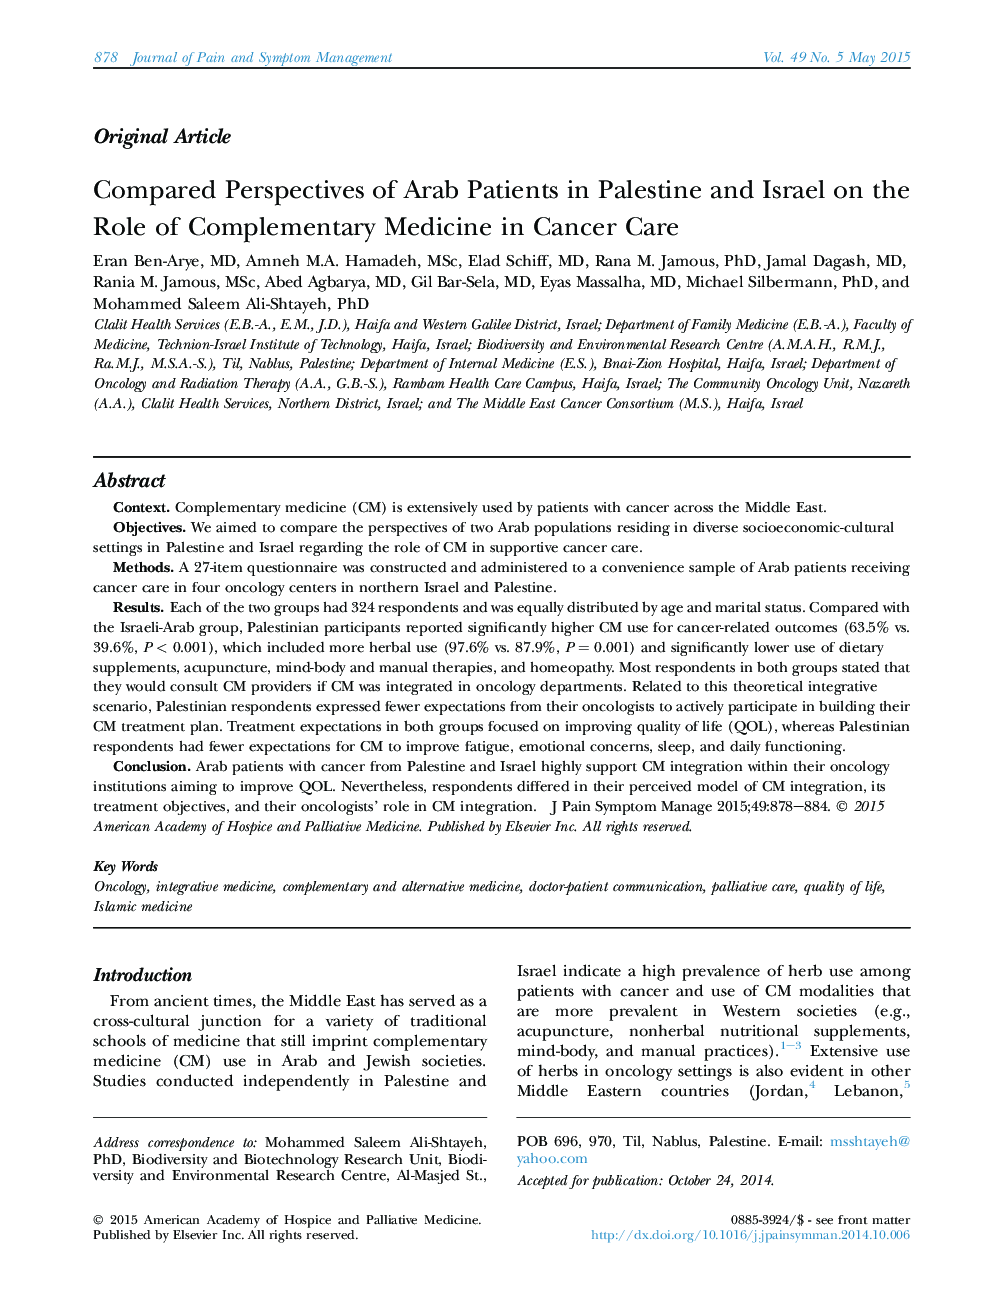 دیدگاه های اصلی در مورد بیماران عرب در فلسطین و اسرائیل در مورد نقش مکمل در مراقبت از سرطان 